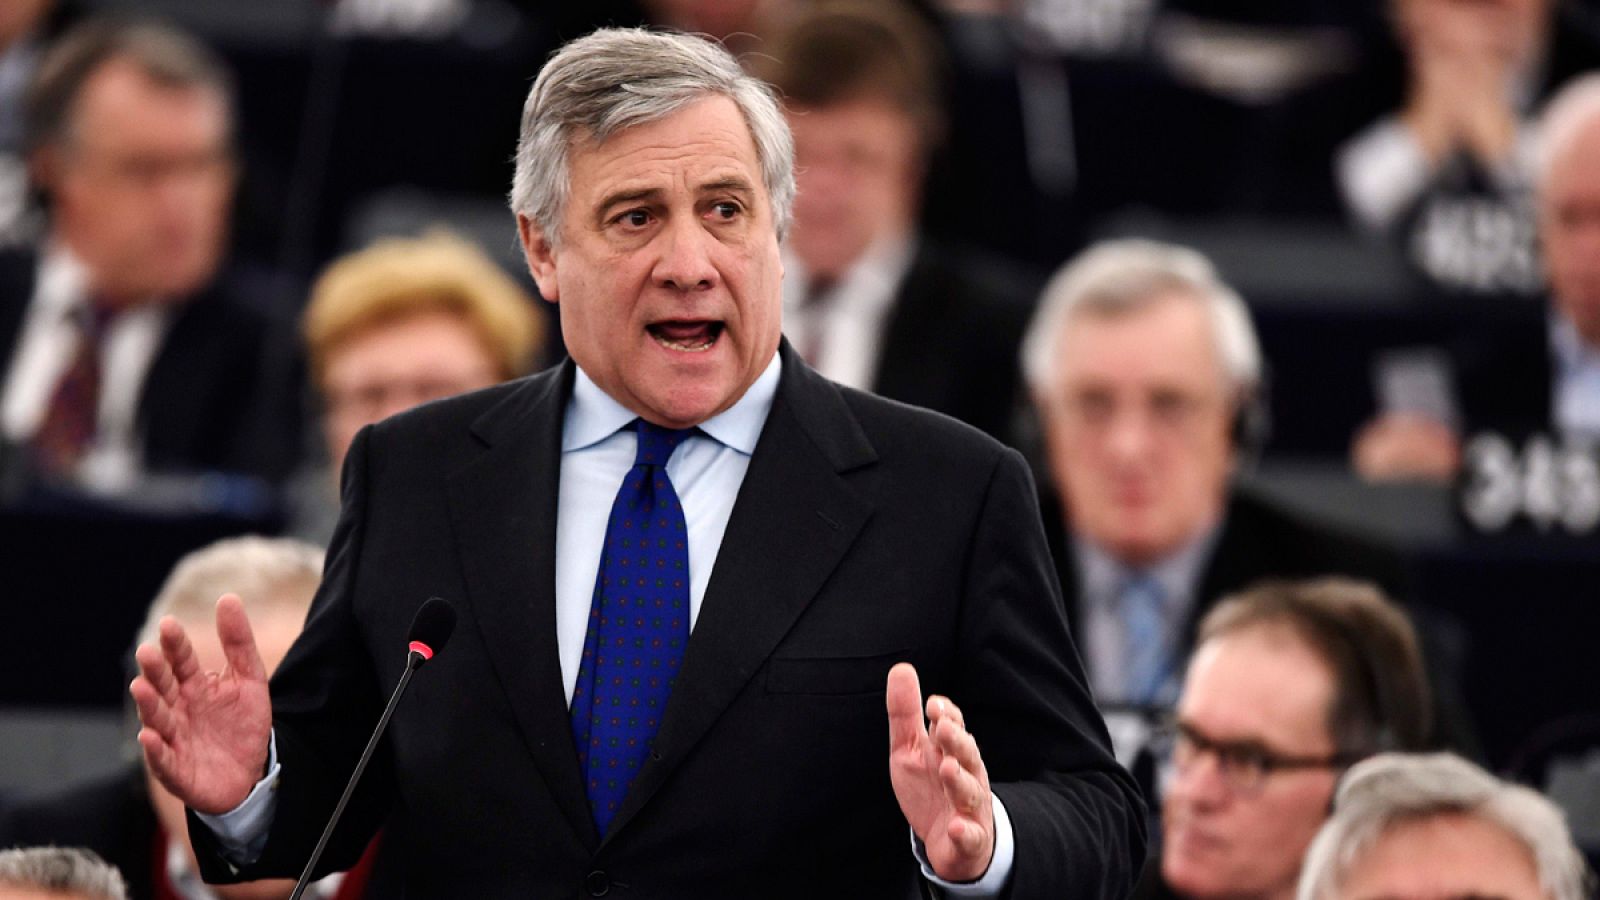 El nuevo presidente del Paralmento Europeo, Antonio Tajani, este martes 17 de enero durante una sesión de la cámara en Estrasburgo.